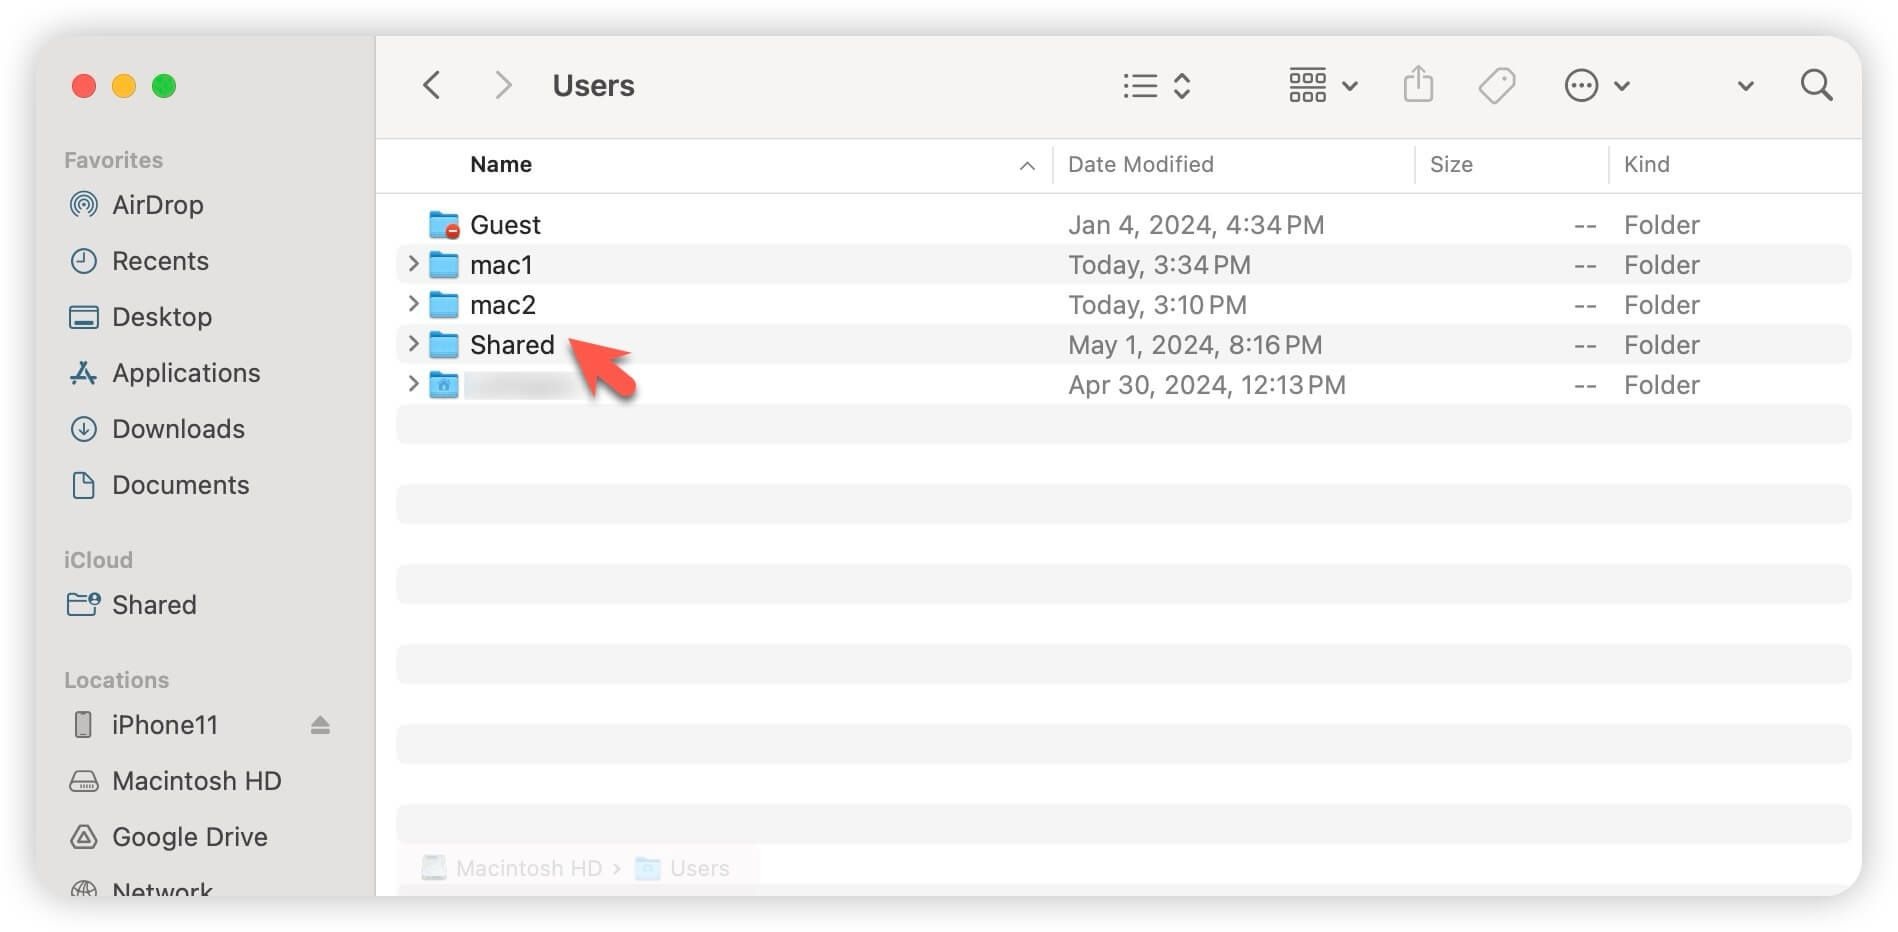 The shared folder on Mac